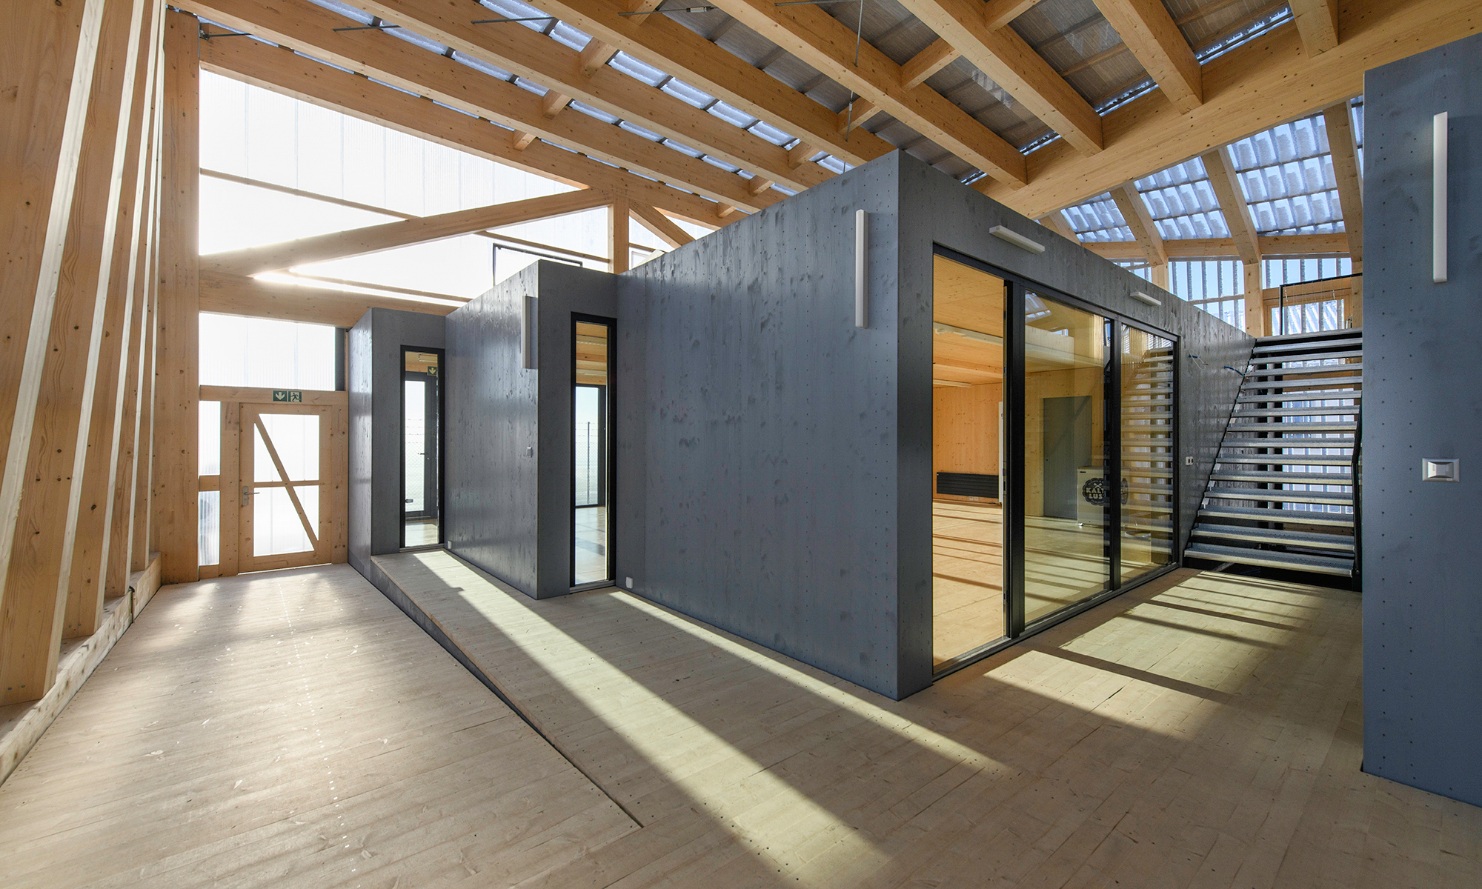 Des modules en bois de la taille d’une pièce définissent des unités spatiales à l’intérieur d’une halle en bois.